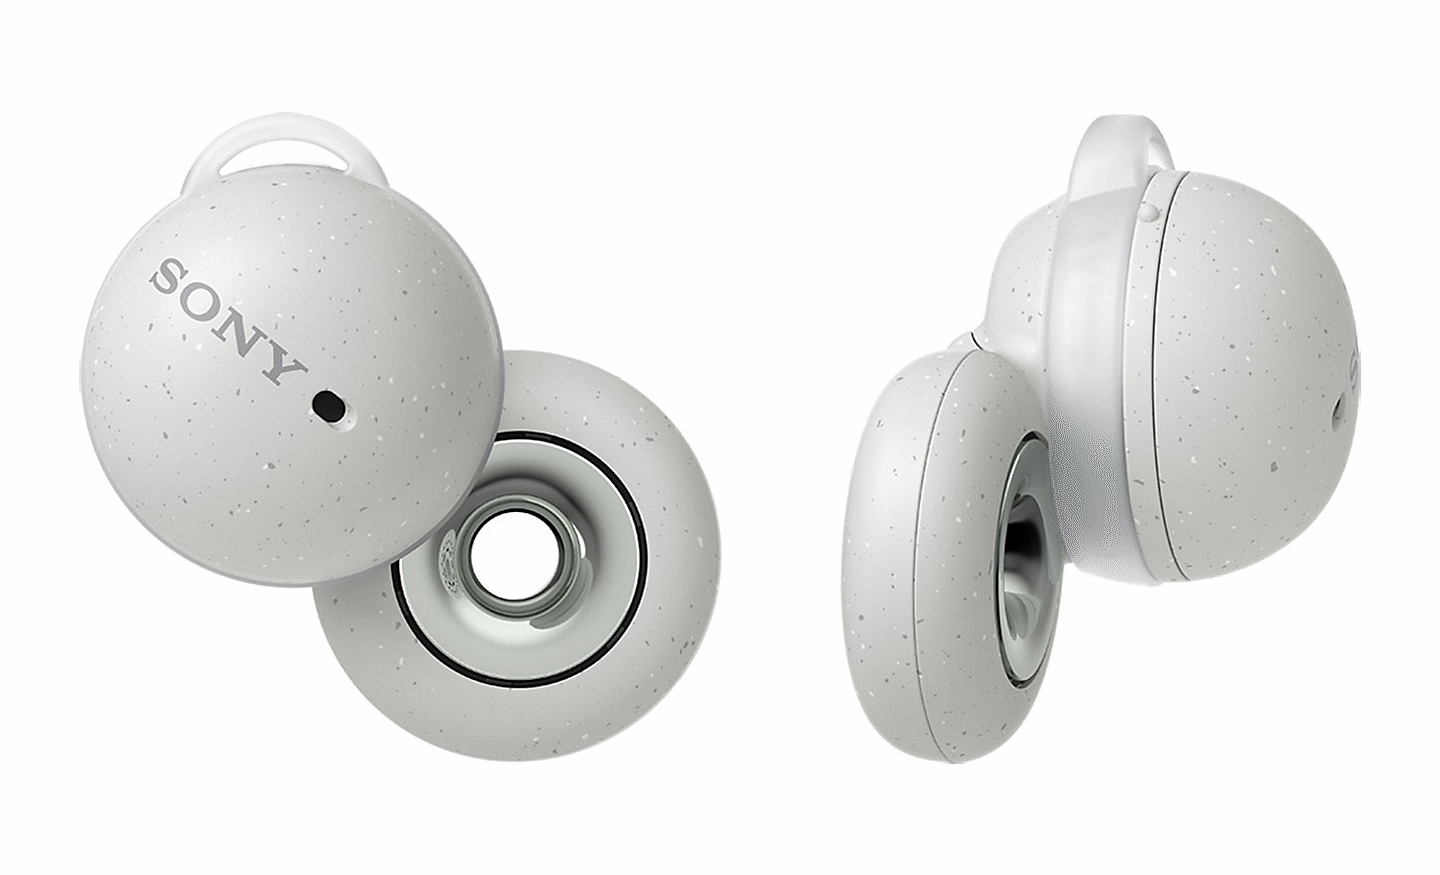 Snímek bílých sluchátek Sony LinkBuds. Jedno sluchátko do uší je vyfotografováno zezadu a druhé z boku